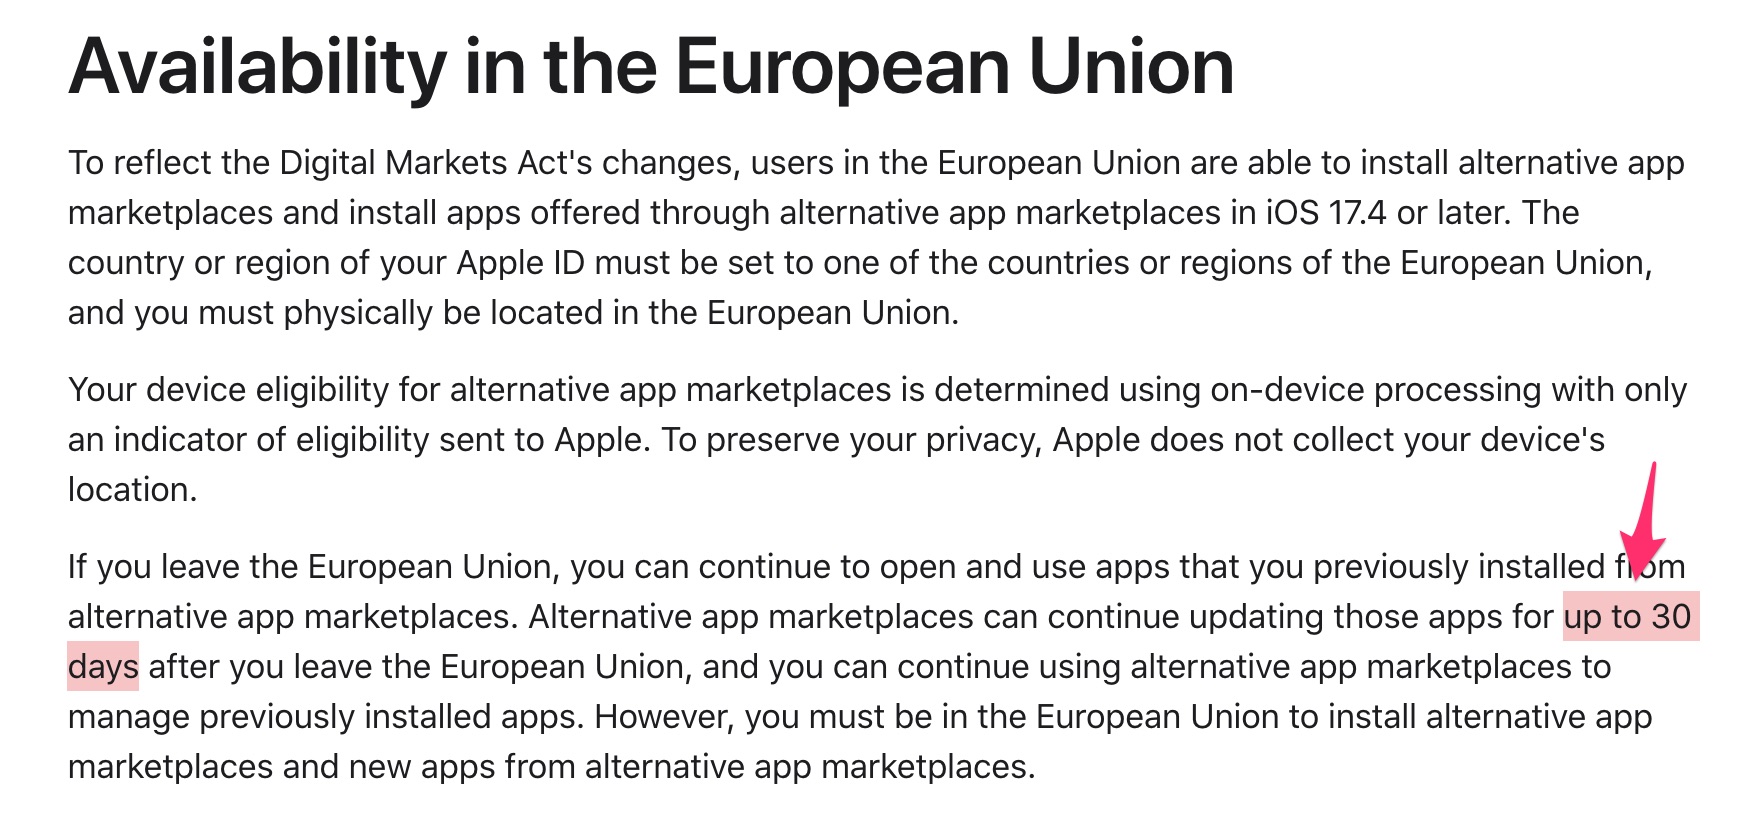 Apple indica que las Apps descargadas desde mercados alternativos de Apps en la Unión Europea dejarán de poderse actualizar tras 30 días fuera de este territorio.